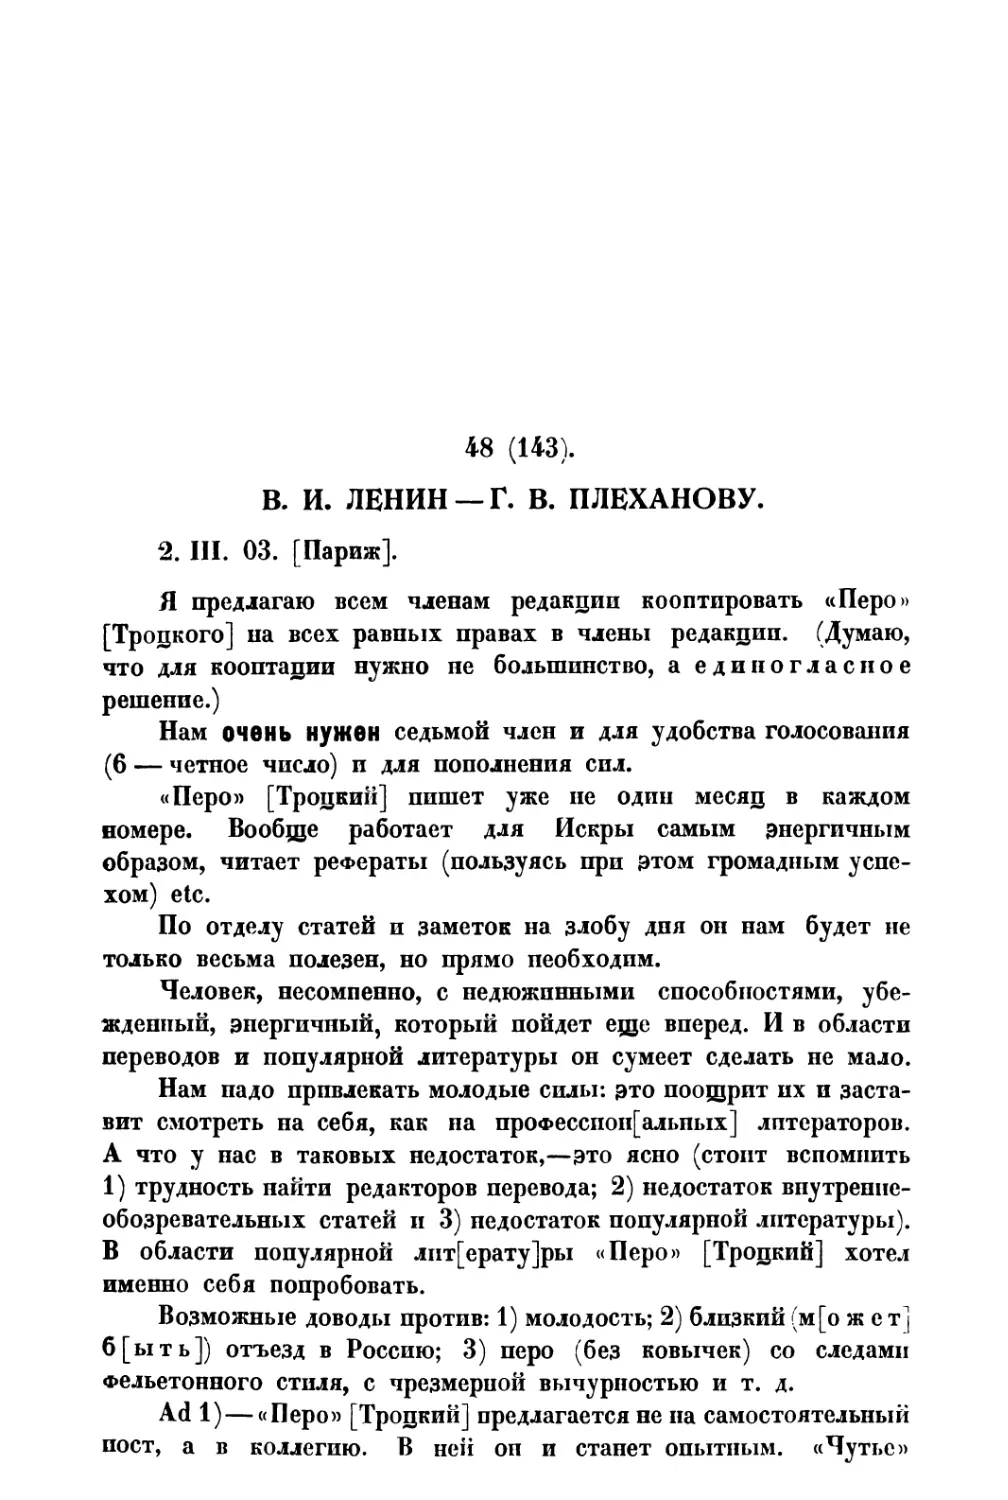 48. В. И. Ленин — Г. В. Плеханову от 2 III 1903 г